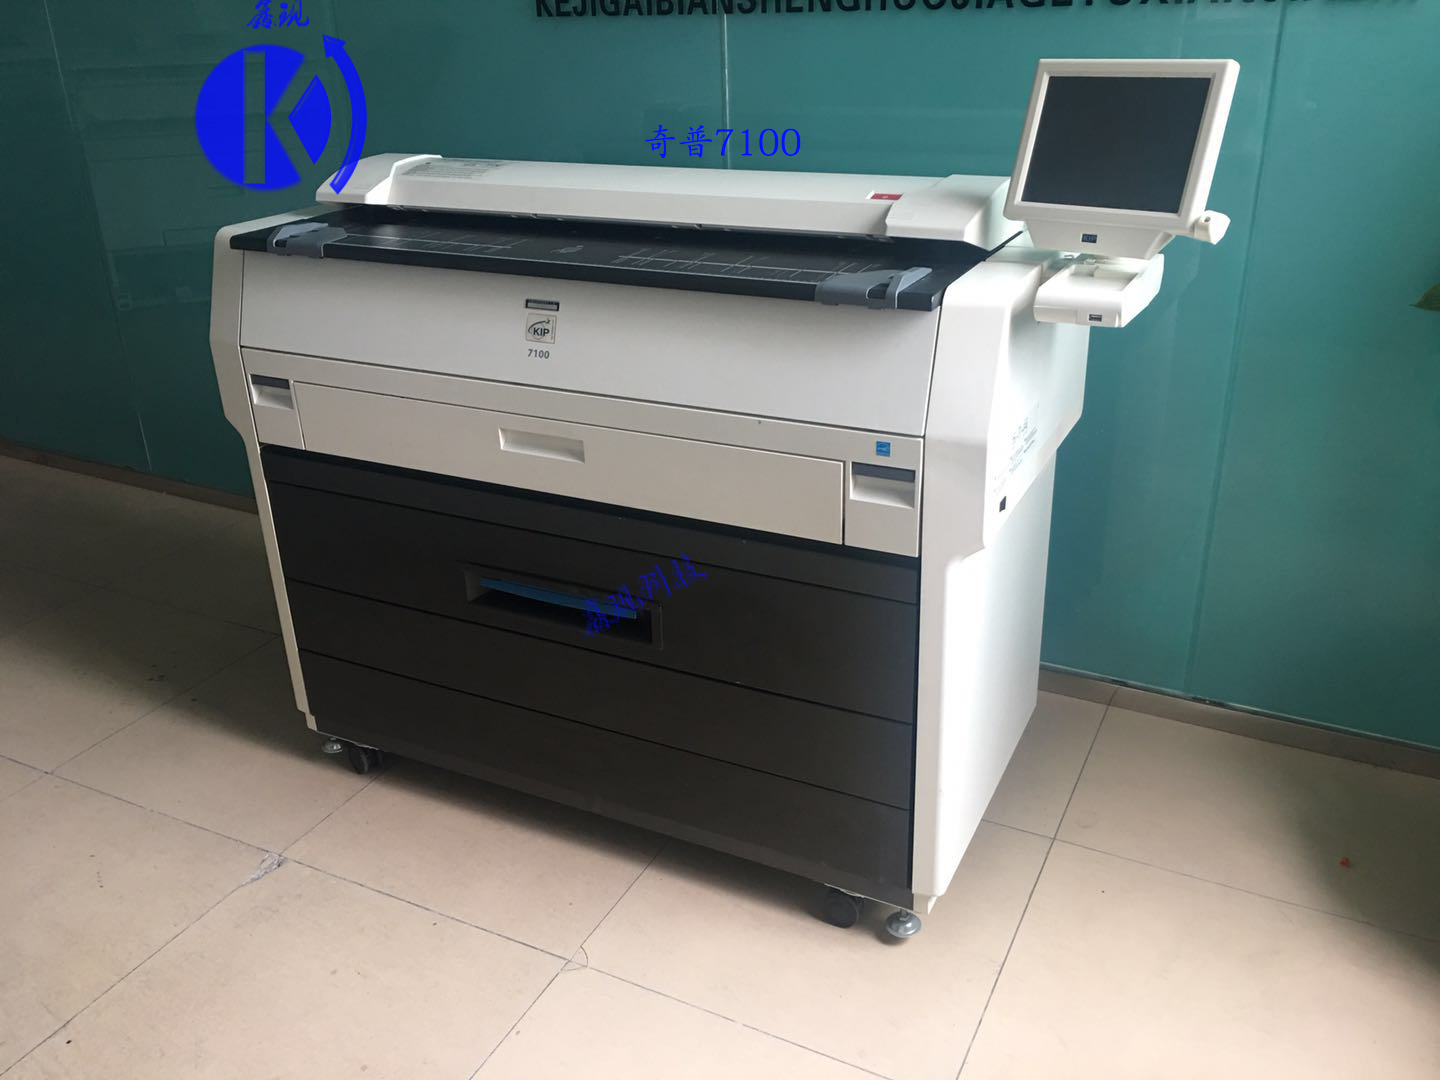 奇普7100二手数码工程复印机激光蓝图晒图机、奇普kip7100激光蓝图打印机数码打印机